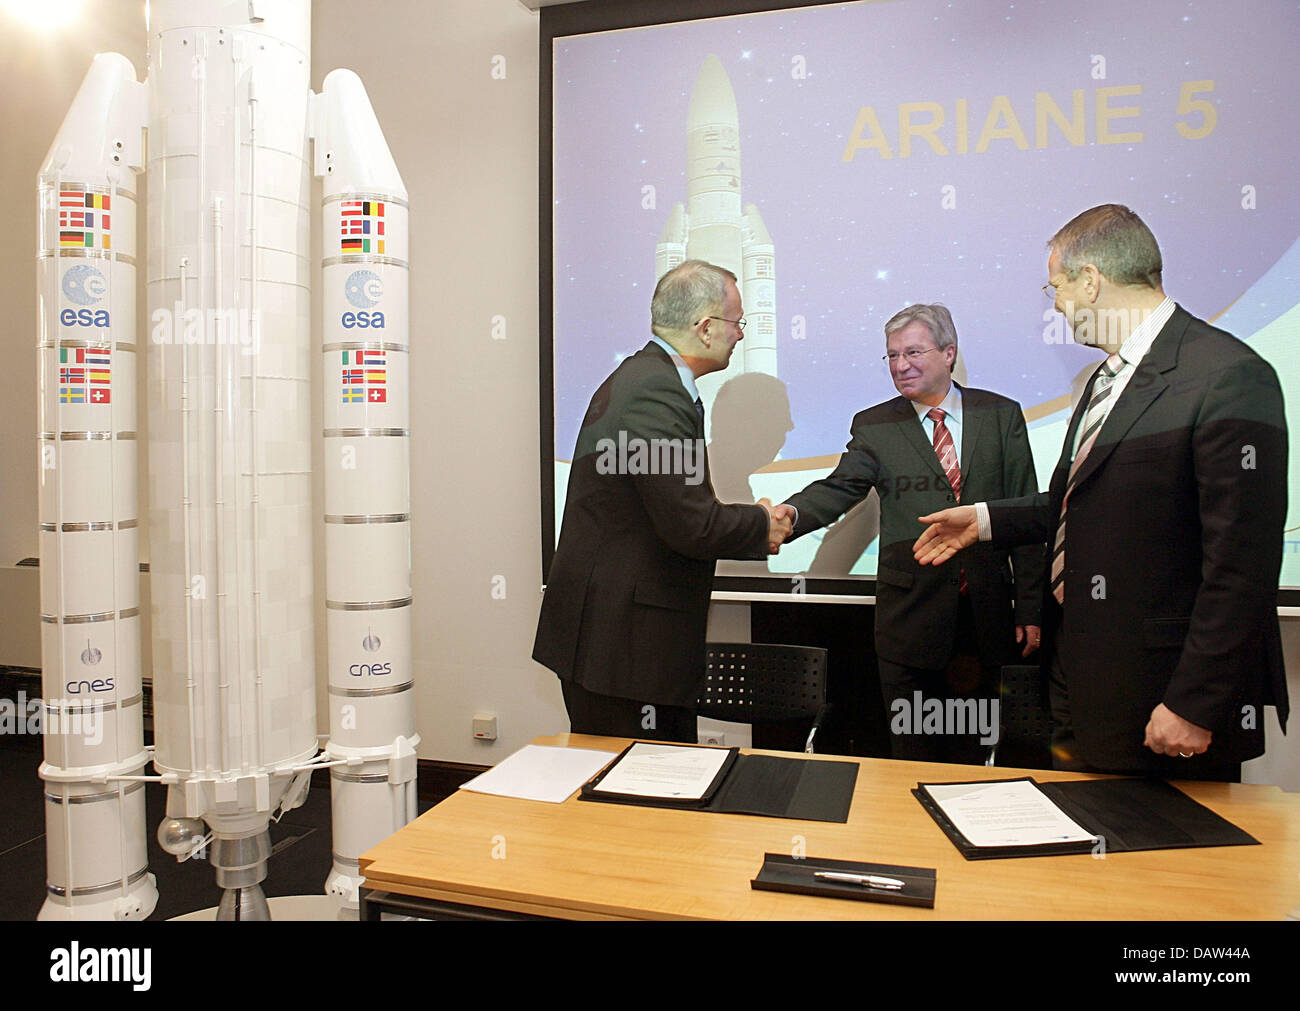 Le chef du gouvernement de Brême Jens Boehrnsen (C) et directeur général d'Arianespace Jean-Yves Le Gall (L) serrer la main à côté du président d'EADS Astrium-Space Evert Dudok de transport (R) à l'hôtel de ville de Brême, Allemagne, le jeudi 15 février 2007. La Brême EADS Astrium et Arianespace français a signé un contrat d'augmenter la production d'Ariane-5 des étages supérieurs de cinq à sept unités annua Banque D'Images